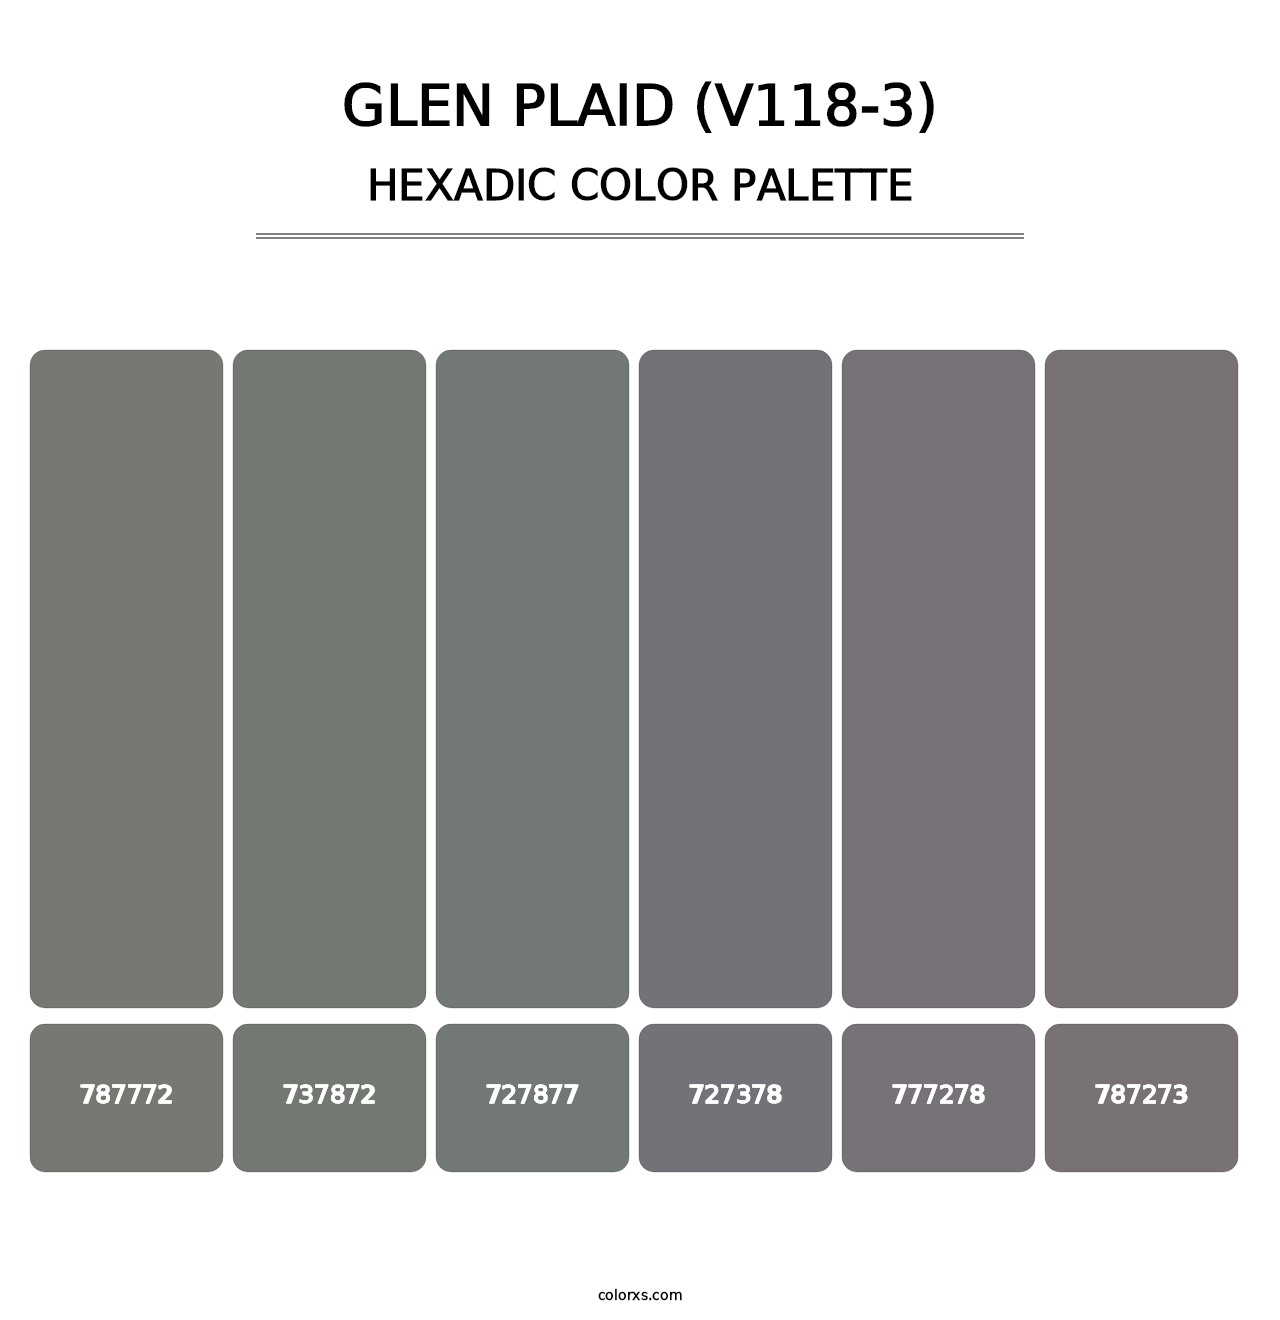 Glen Plaid (V118-3) - Hexadic Color Palette